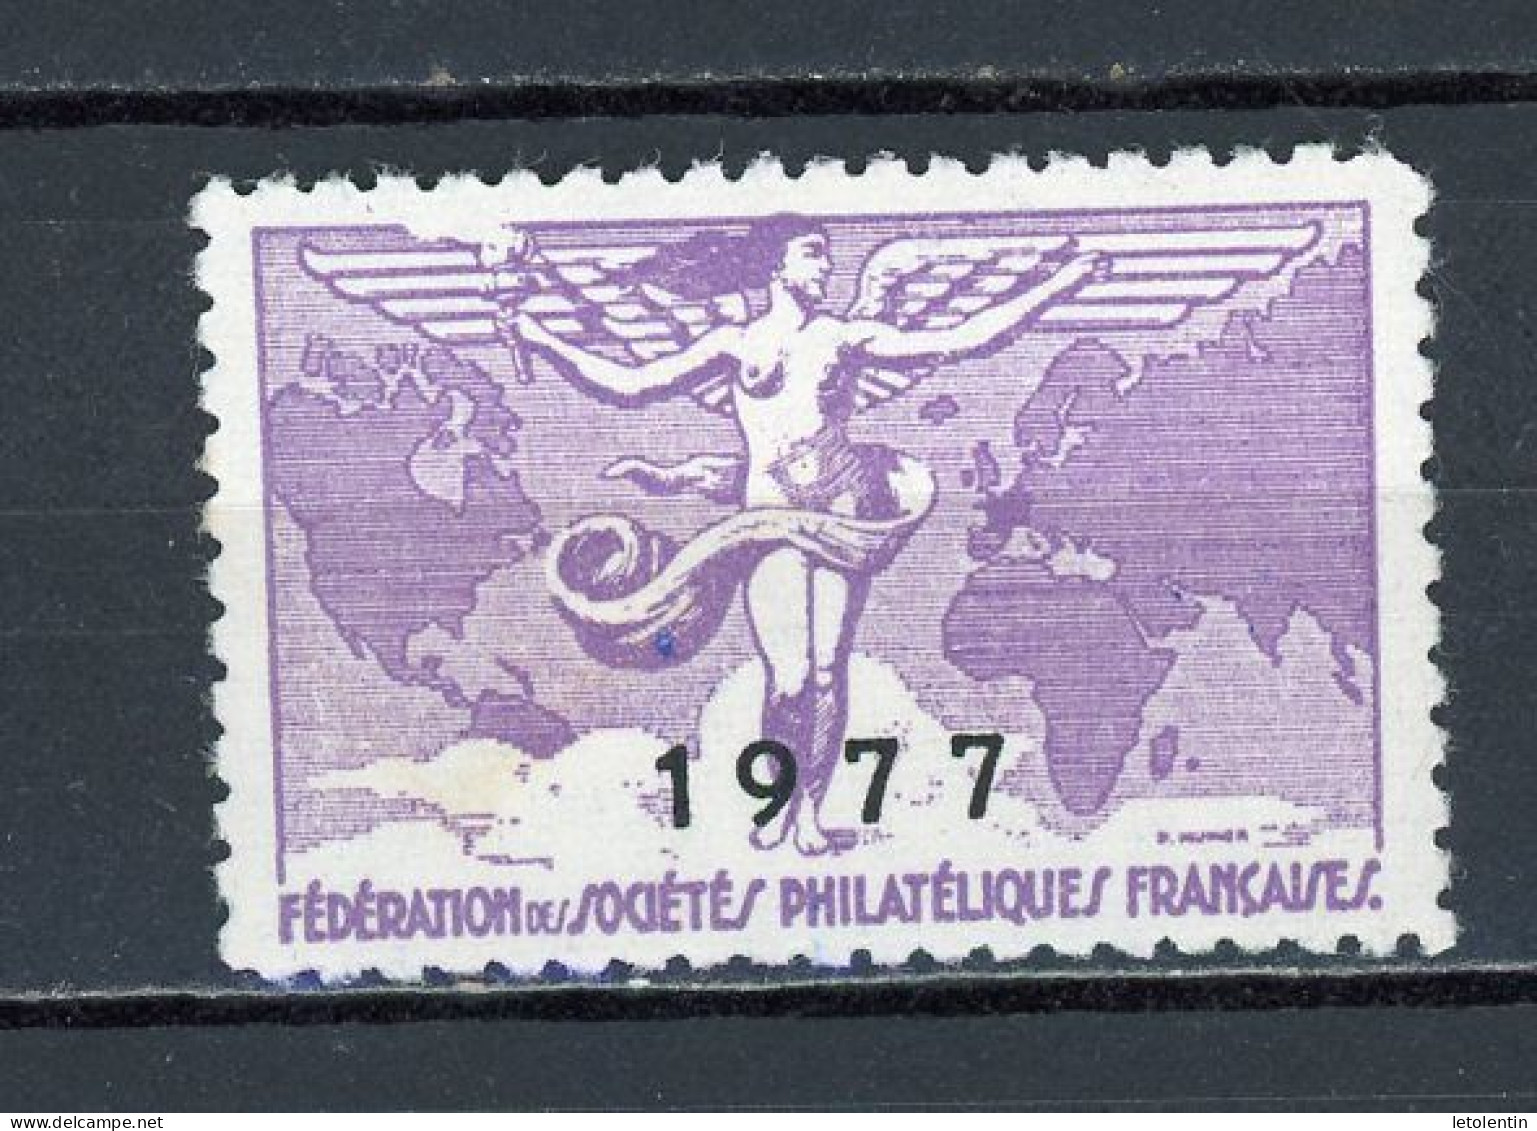 FEDERATION DES SOCIÉTÉS PHILATÉLIQUES FRANÇAISES 1977 * - Philatelic Fairs